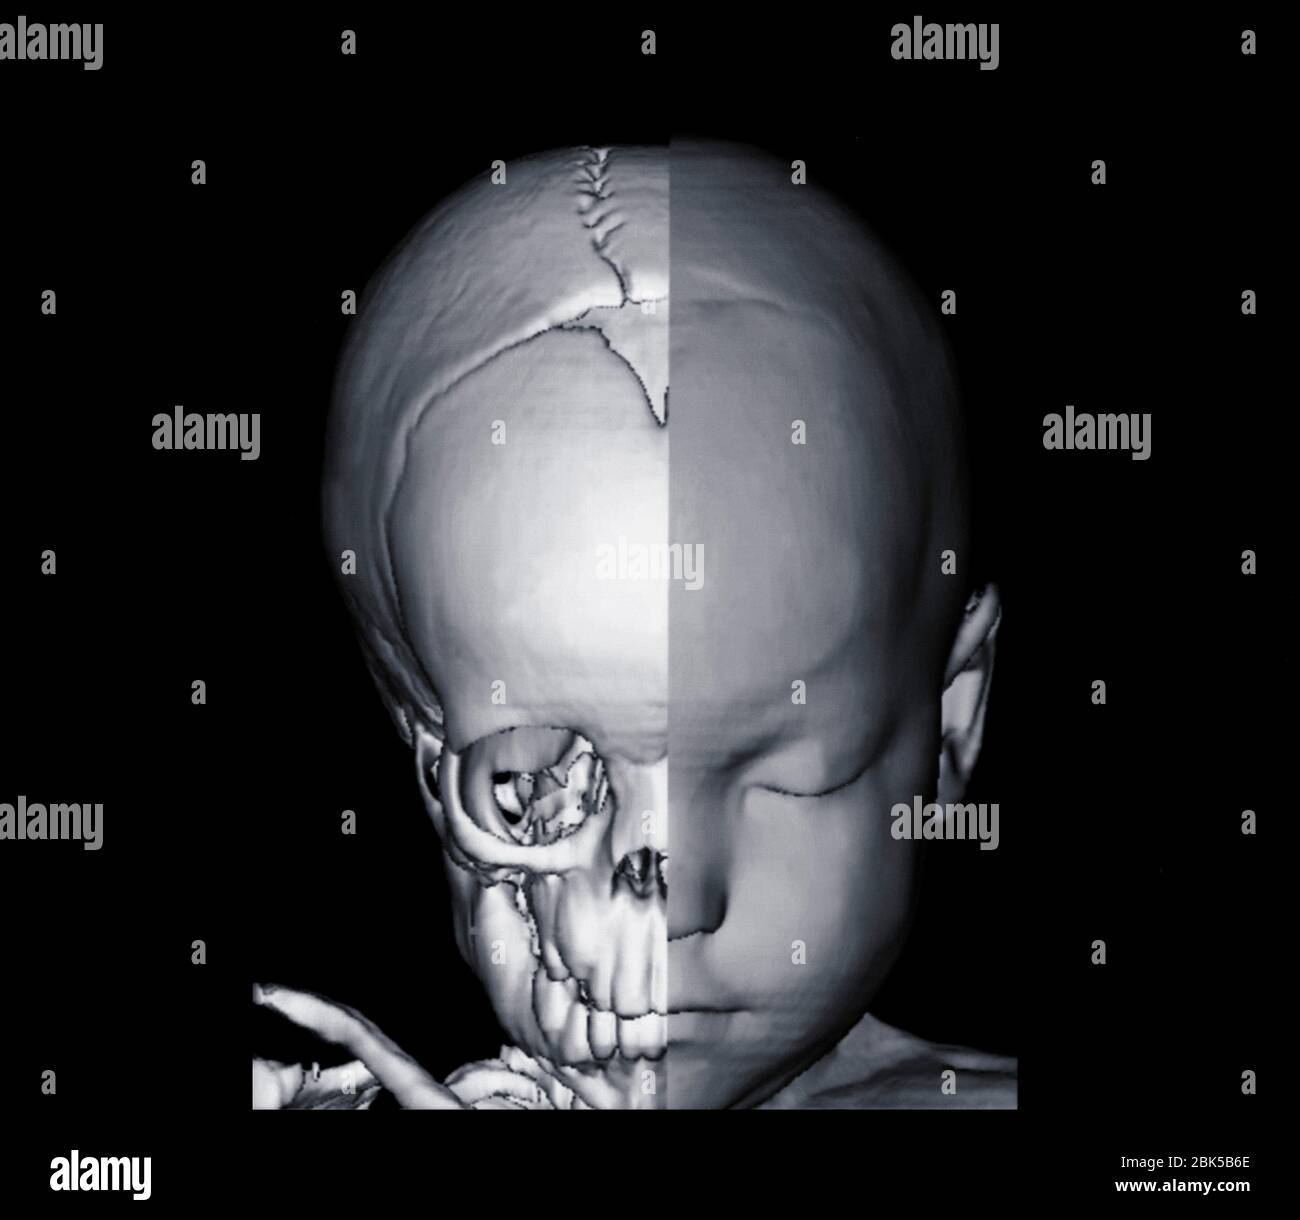 Immagine della testa del bambino e del cranio a metà, tomografia computerizzata (TC). Foto Stock